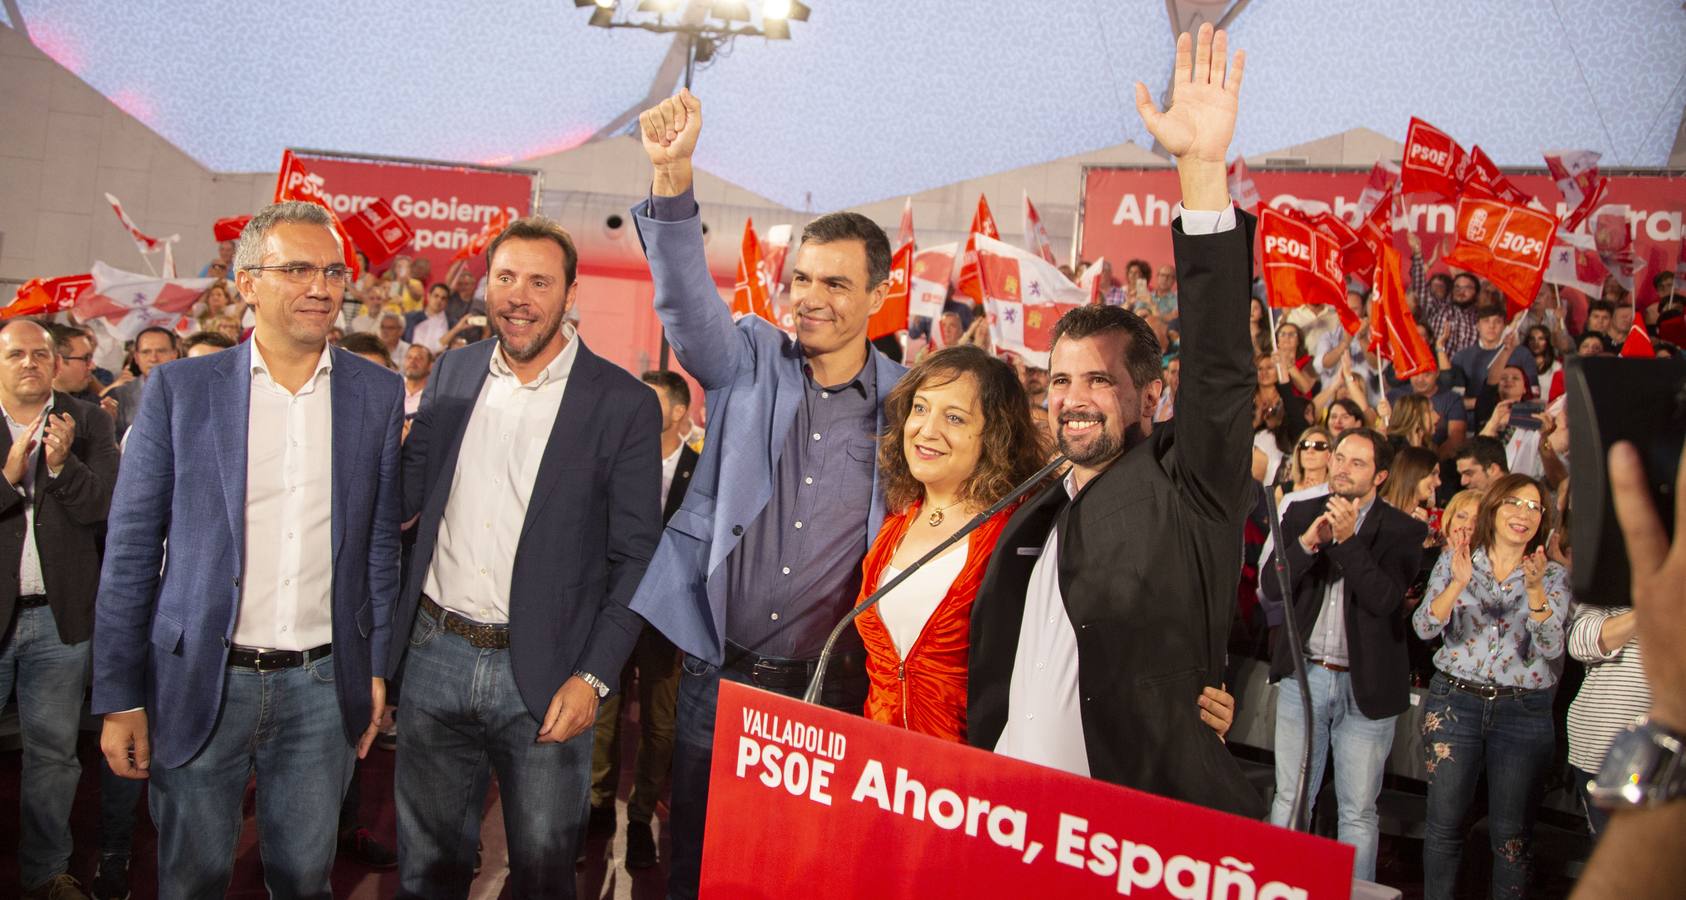 El candidato a la presidencia del Gobierno por el PSOE y presidente en Funciones, Pedro Sánchez, participa en un acto político en la Cúpula del Milenio de Valladolid.